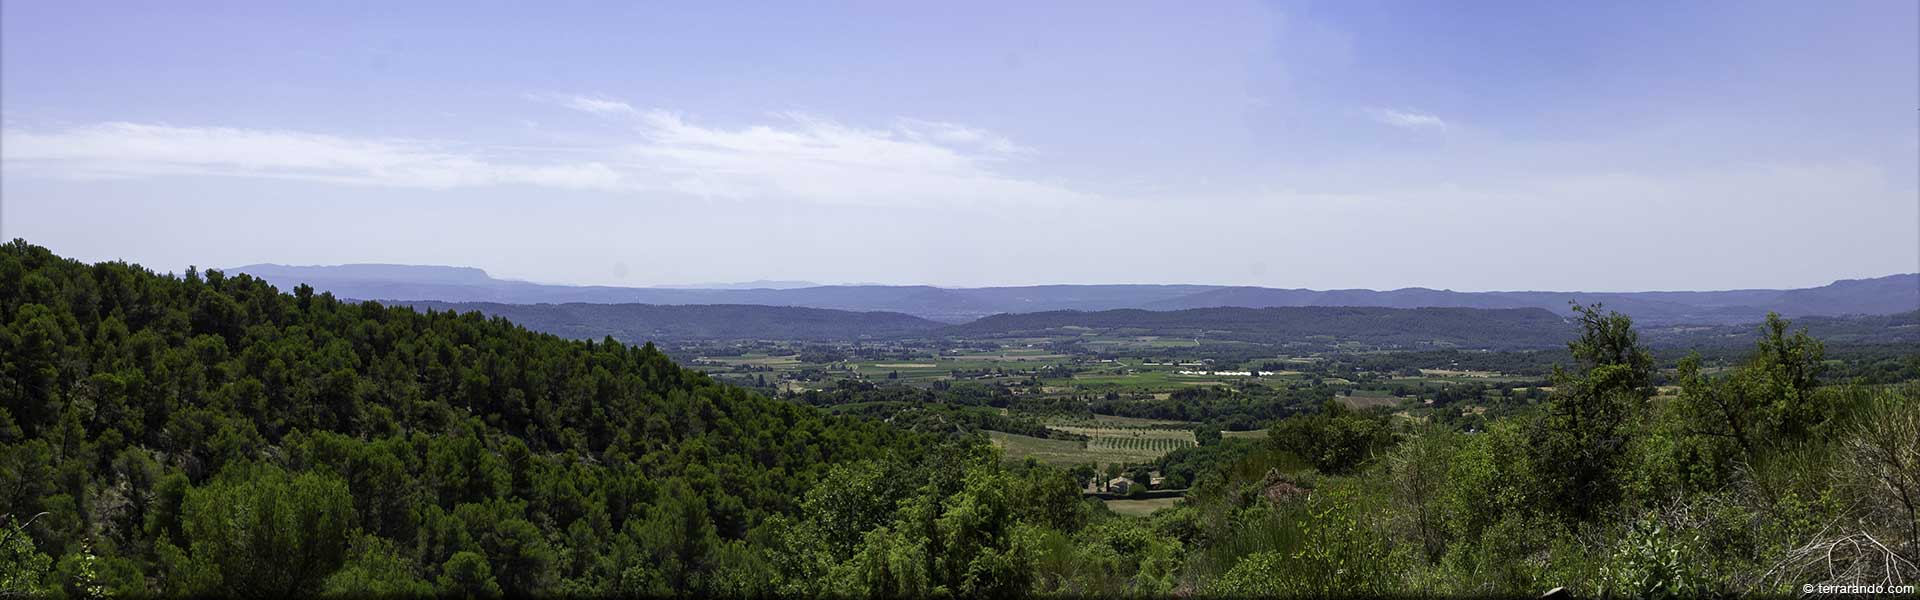 Randonnée de Cucuron au sud du Luberon